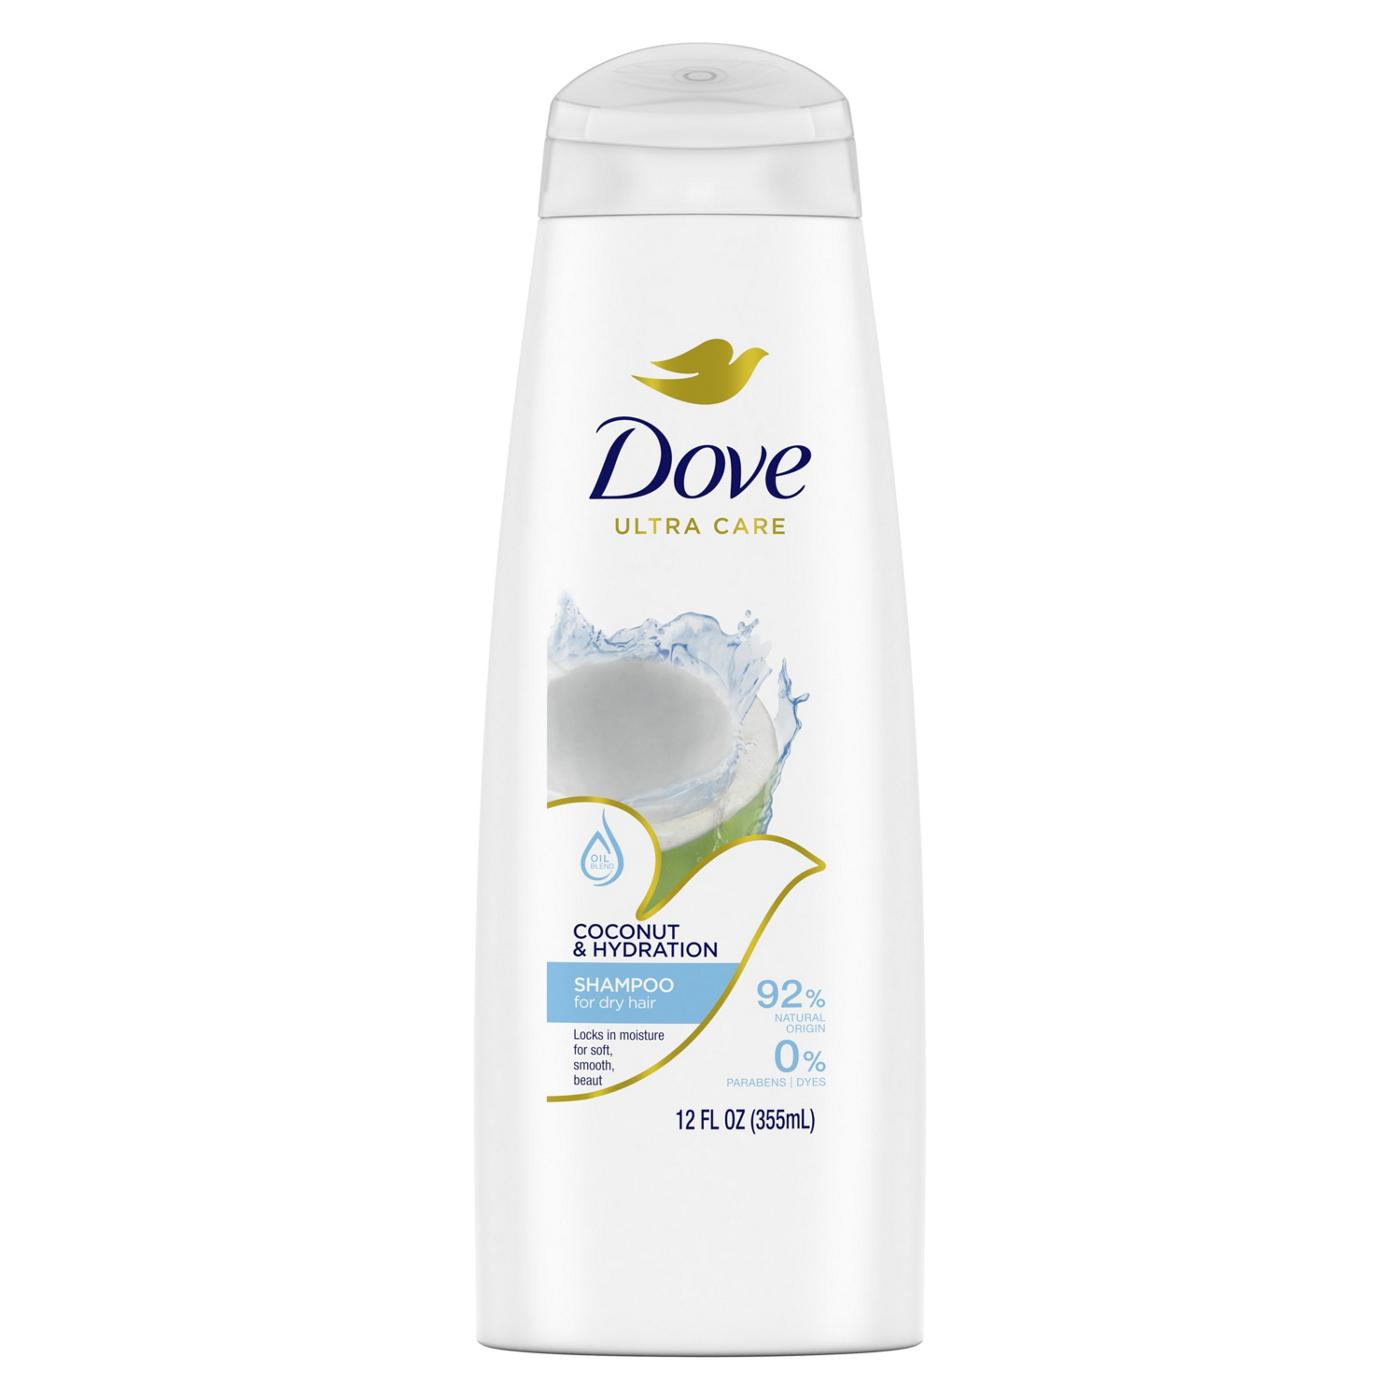 Dove Ultra Care Shampoo - Coconut & Hydration - Shop Shampoo & Conditioner  at H-E-B